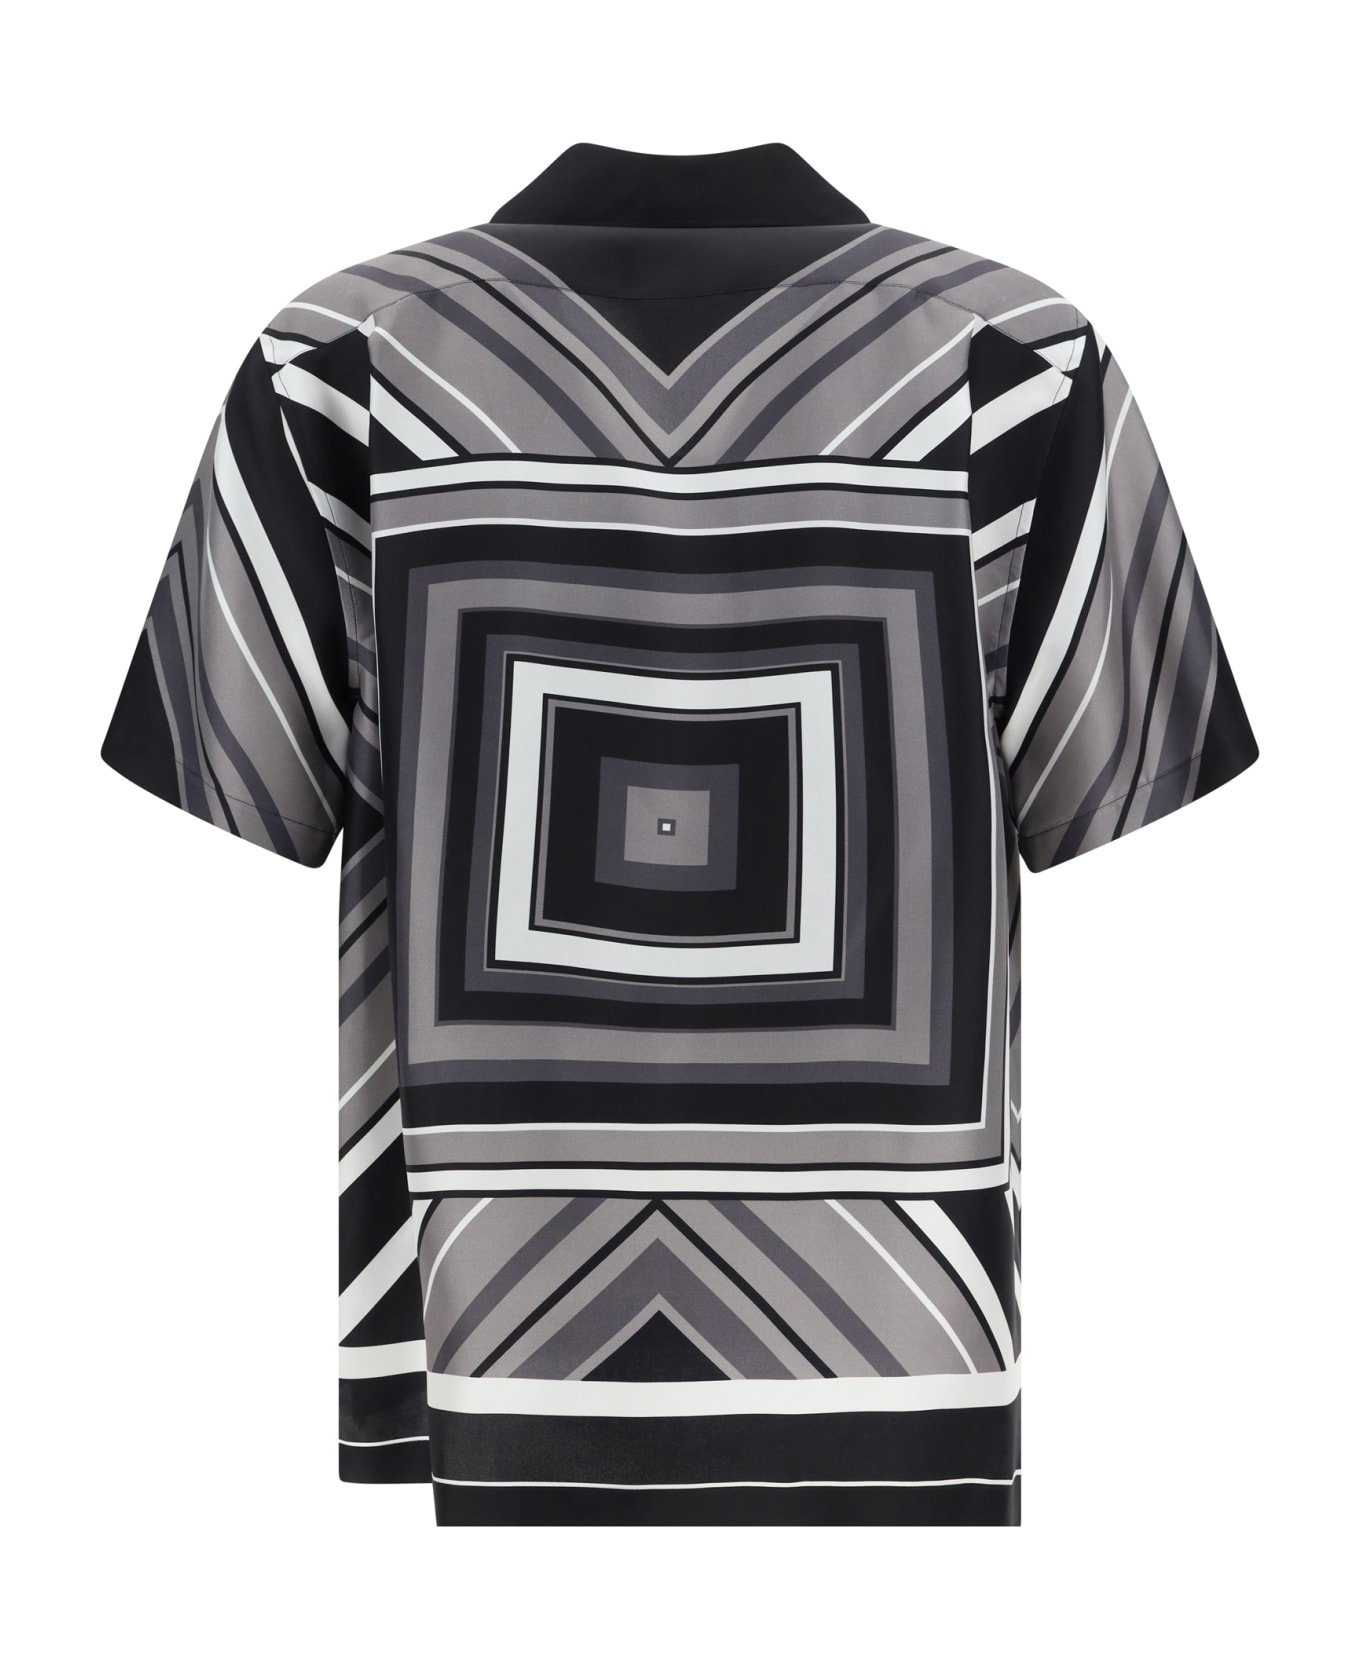 Dolce & Gabbana Silk Short-sleeved Shirt - Mix Righe シャツ